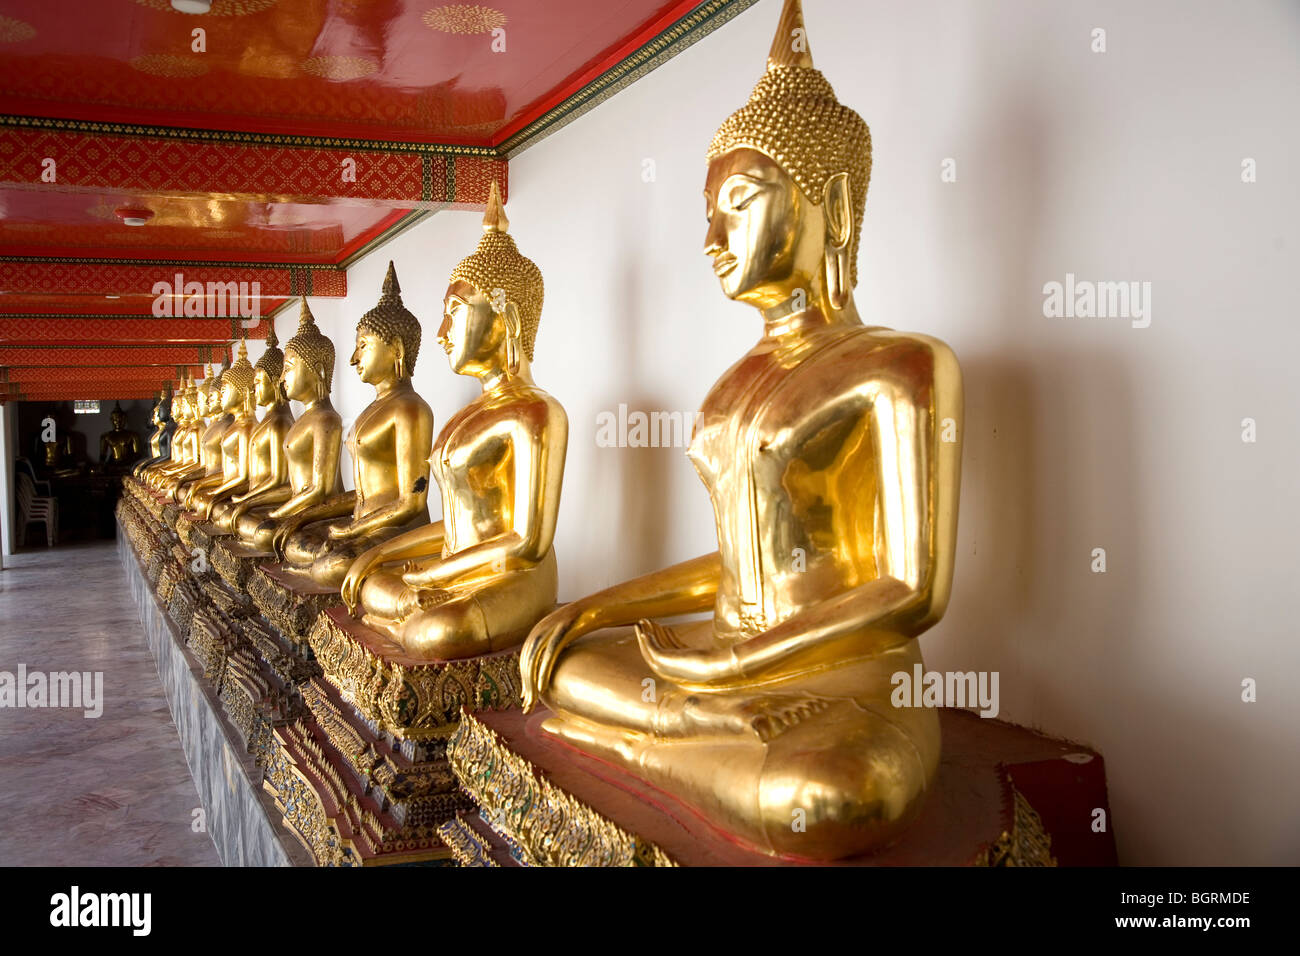 Row of Gold Statues at Wat Pho, bangkok Stock Photo